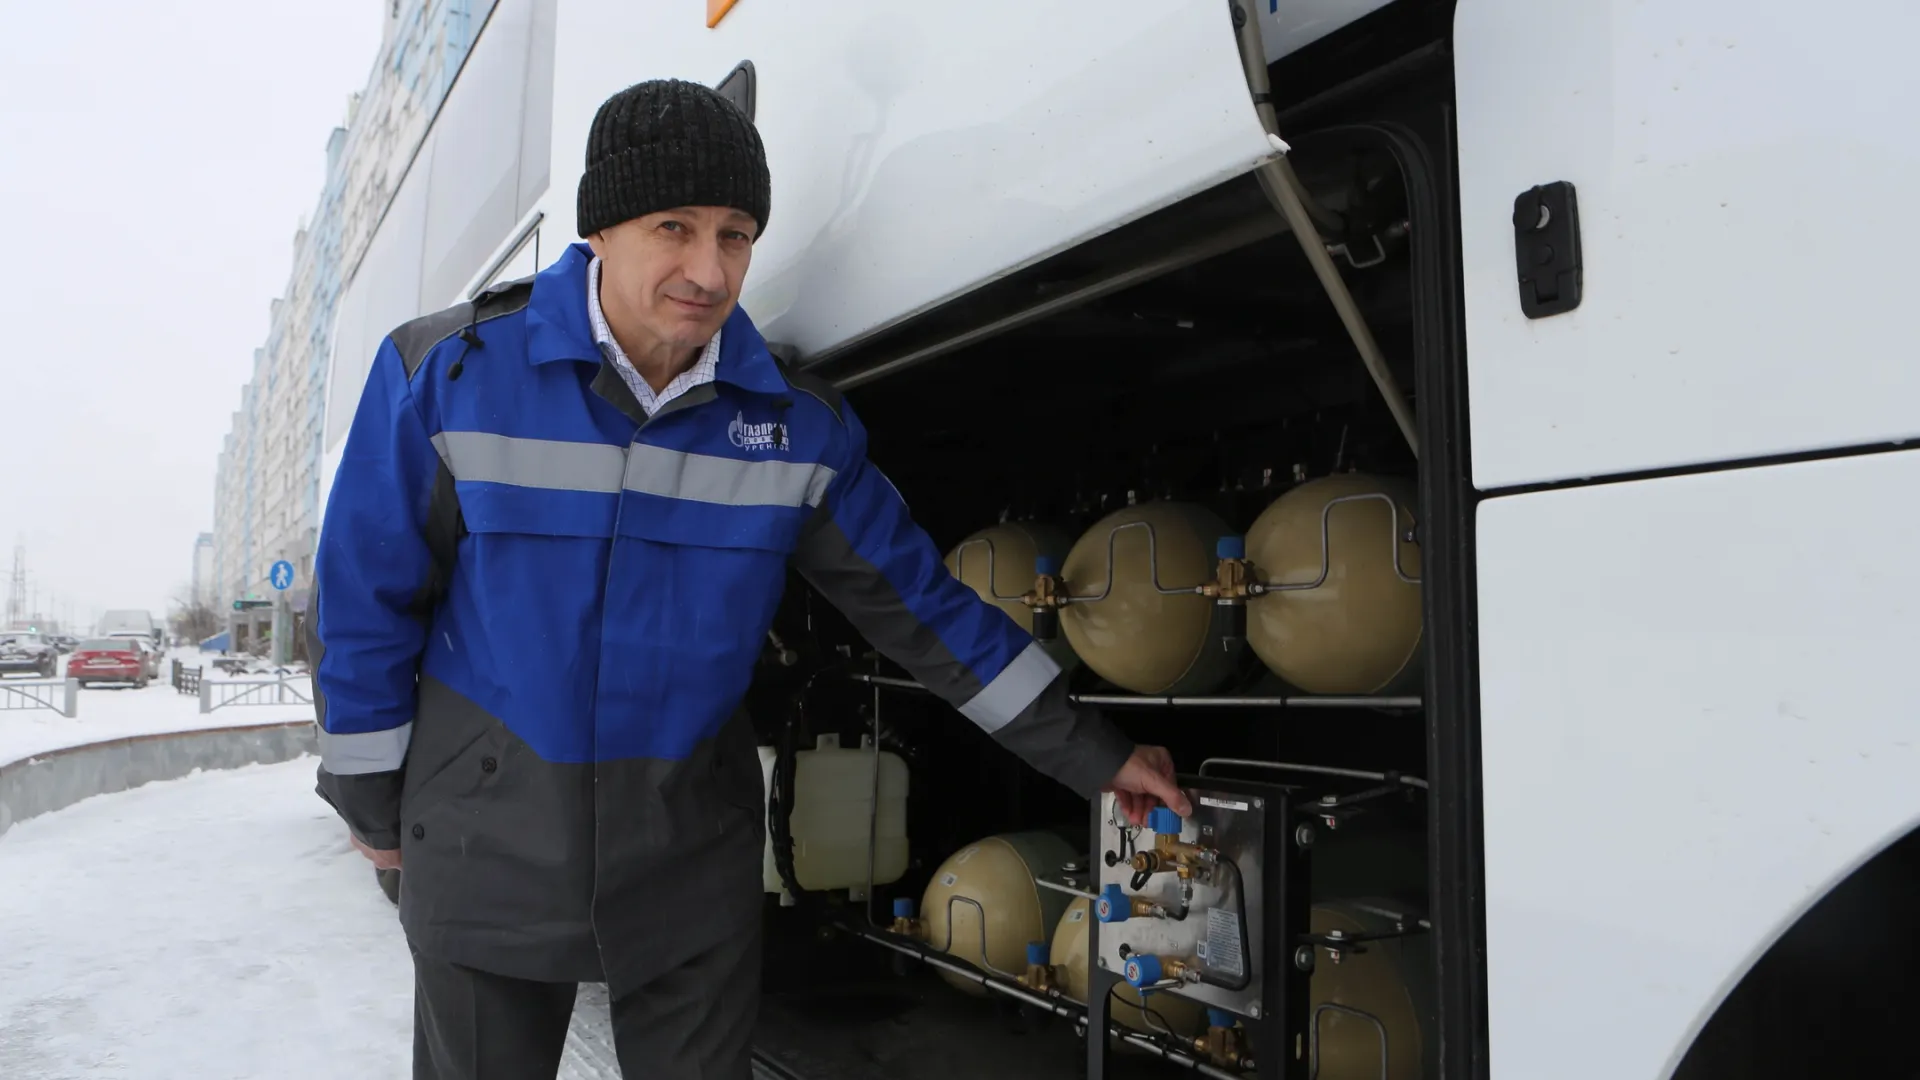 Участникам профориентационного мероприятия и жителям города показали газобаллонное оборудование. Фото предоставлено ООО «Газпром добыча Уренгой».